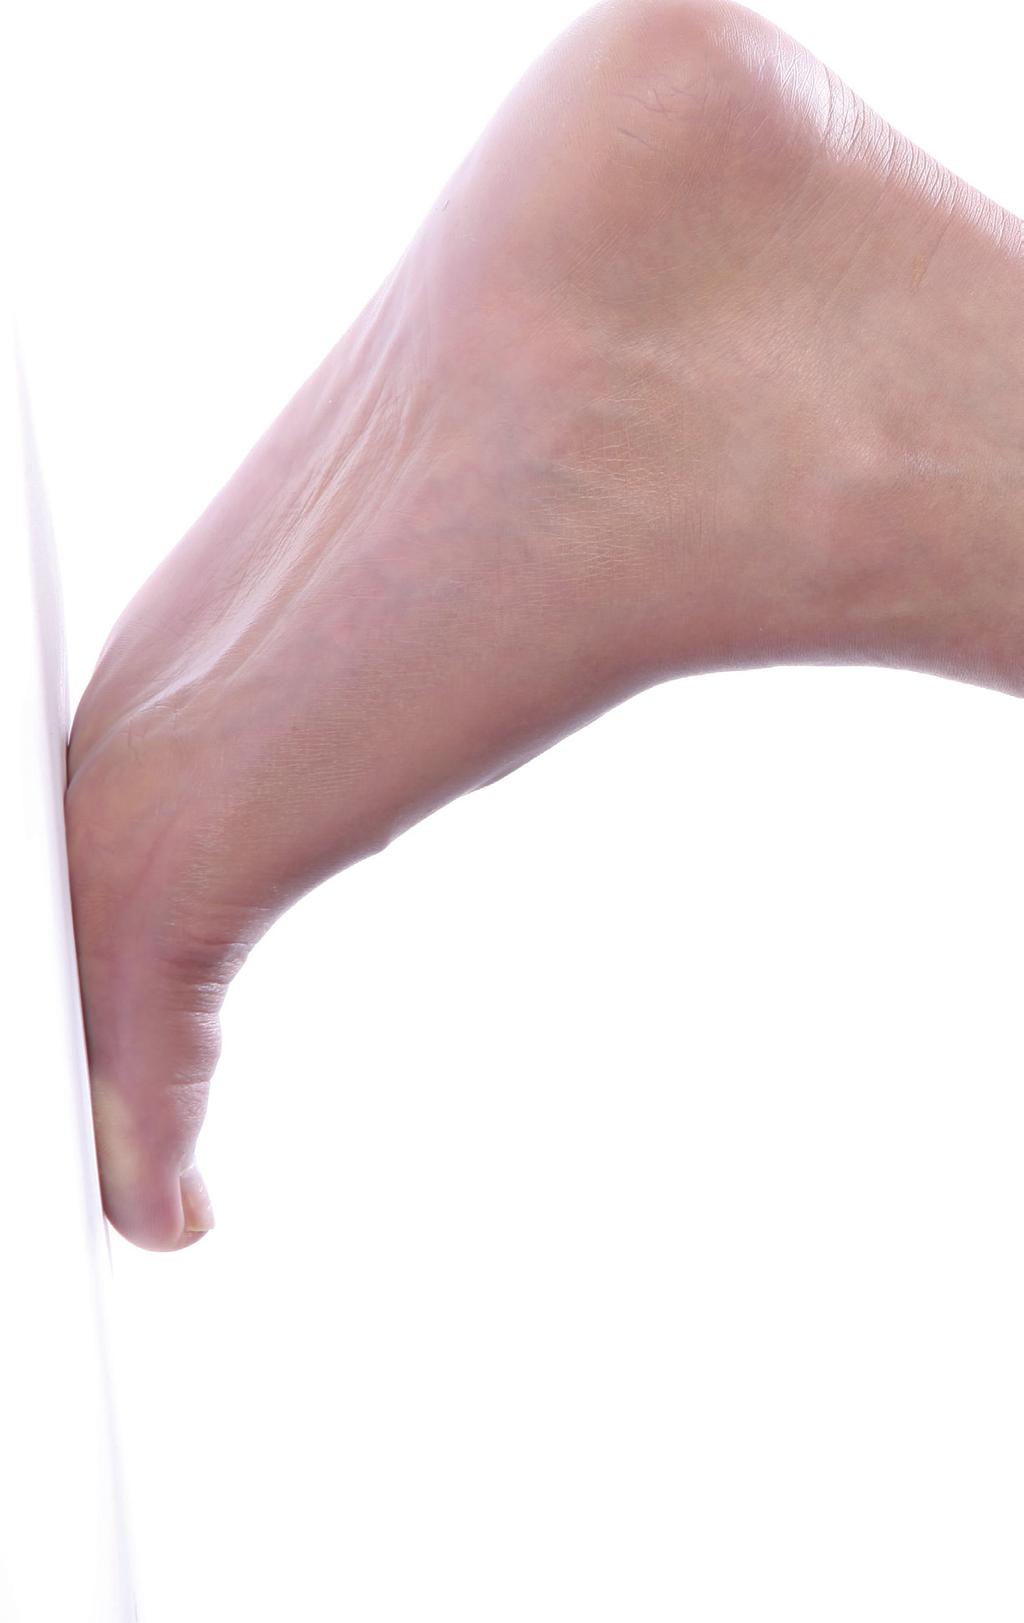 Gesunde und schöne Füße: Was heute so läuft Das besondere Händchen für Füße, Feingefühl für ästhetische Proportionen und Anmutungen gepaart mit großer Erfahrung im Umgang mit den feinen anatomischen